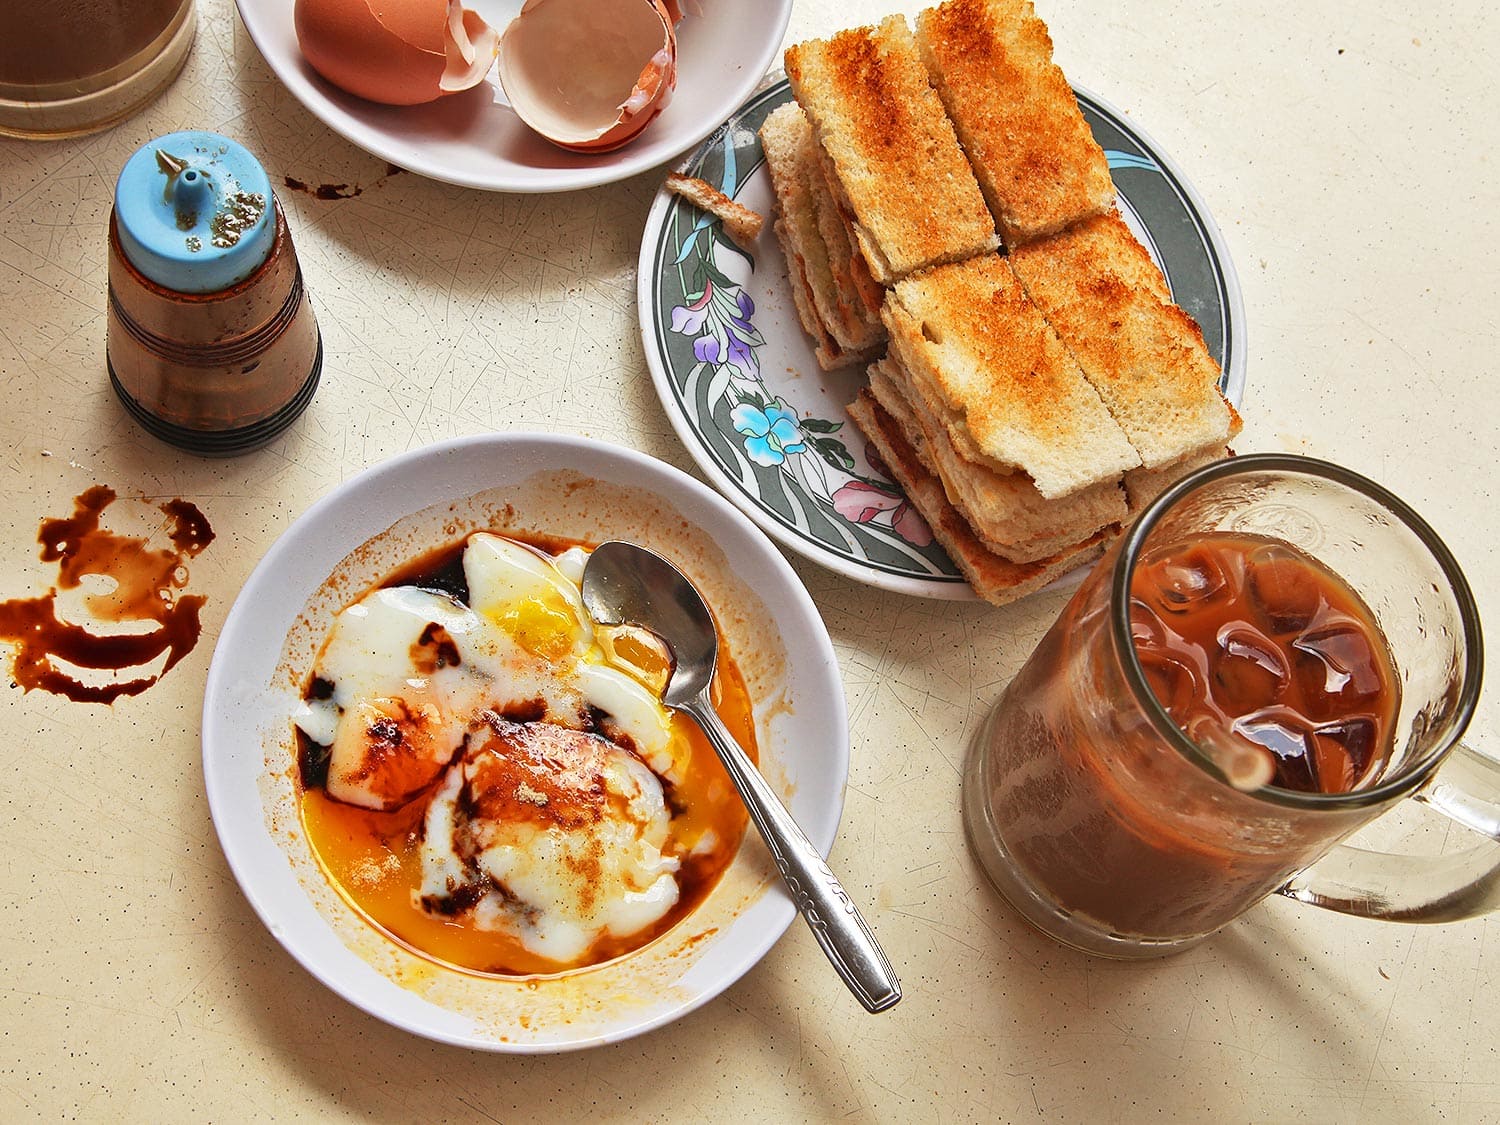 Đĩa bánh mỳ nướng vàng giòn phết bơ lạnh và mứt kaya, bên cạnh bát trứng luộc mềm và cốc cafe trên bàn